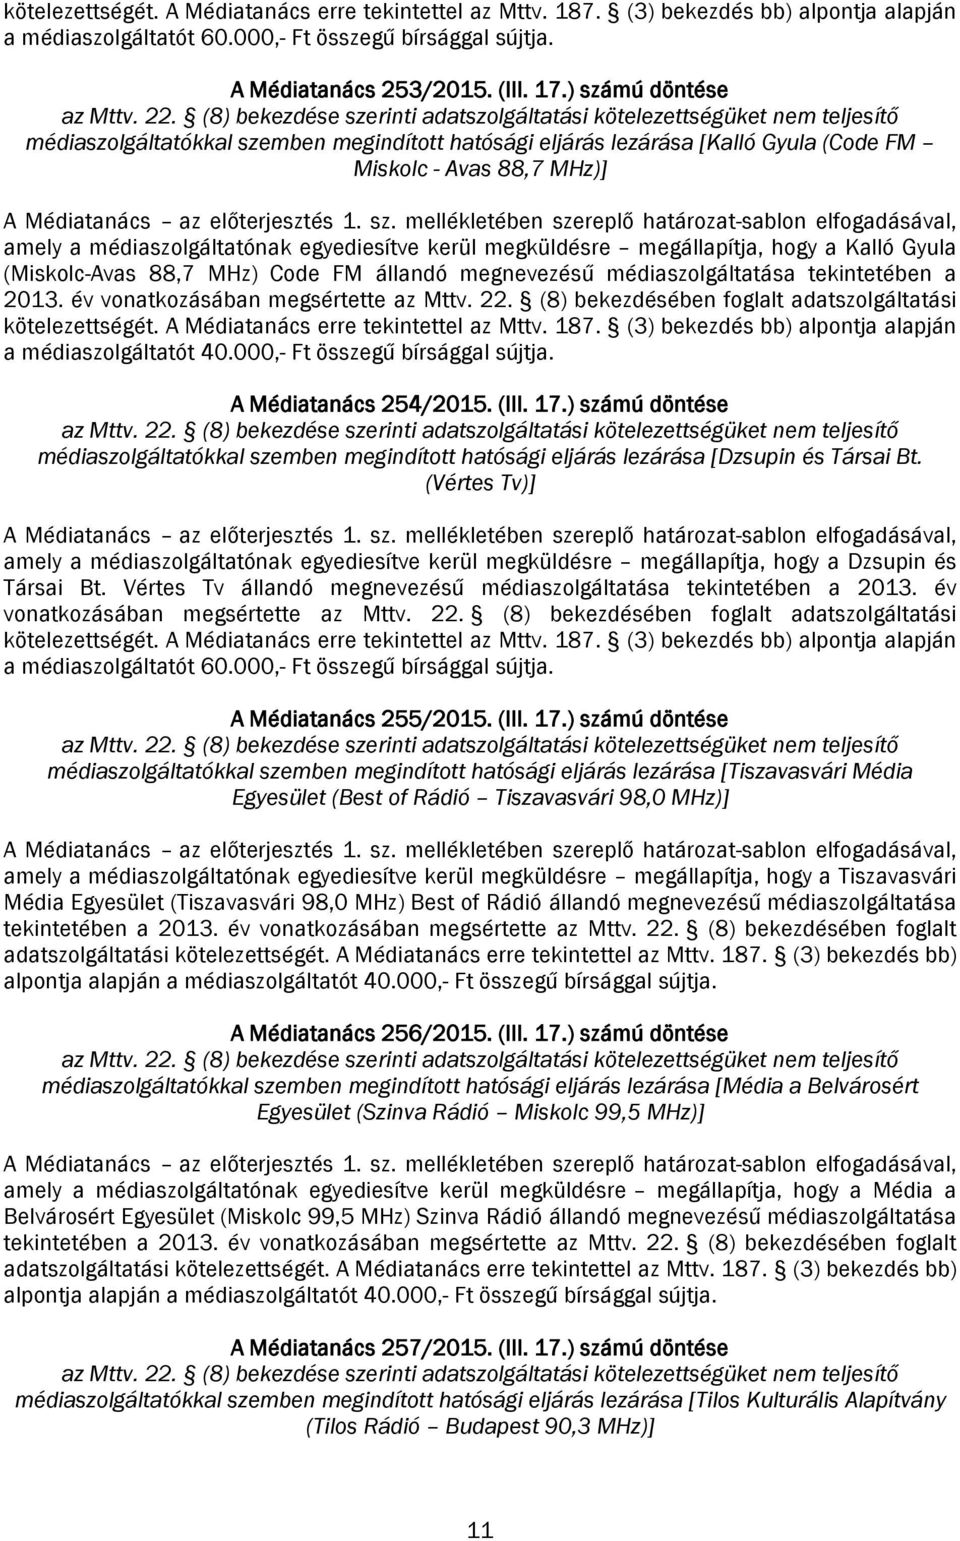 megállapítja, hogy a Kalló Gyula (Miskolc-Avas 88,7 MHz) Code FM állandó megnevezésű médiaszolgáltatása tekintetében a 2013. év vonatkozásában megsértette az Mttv. 22.